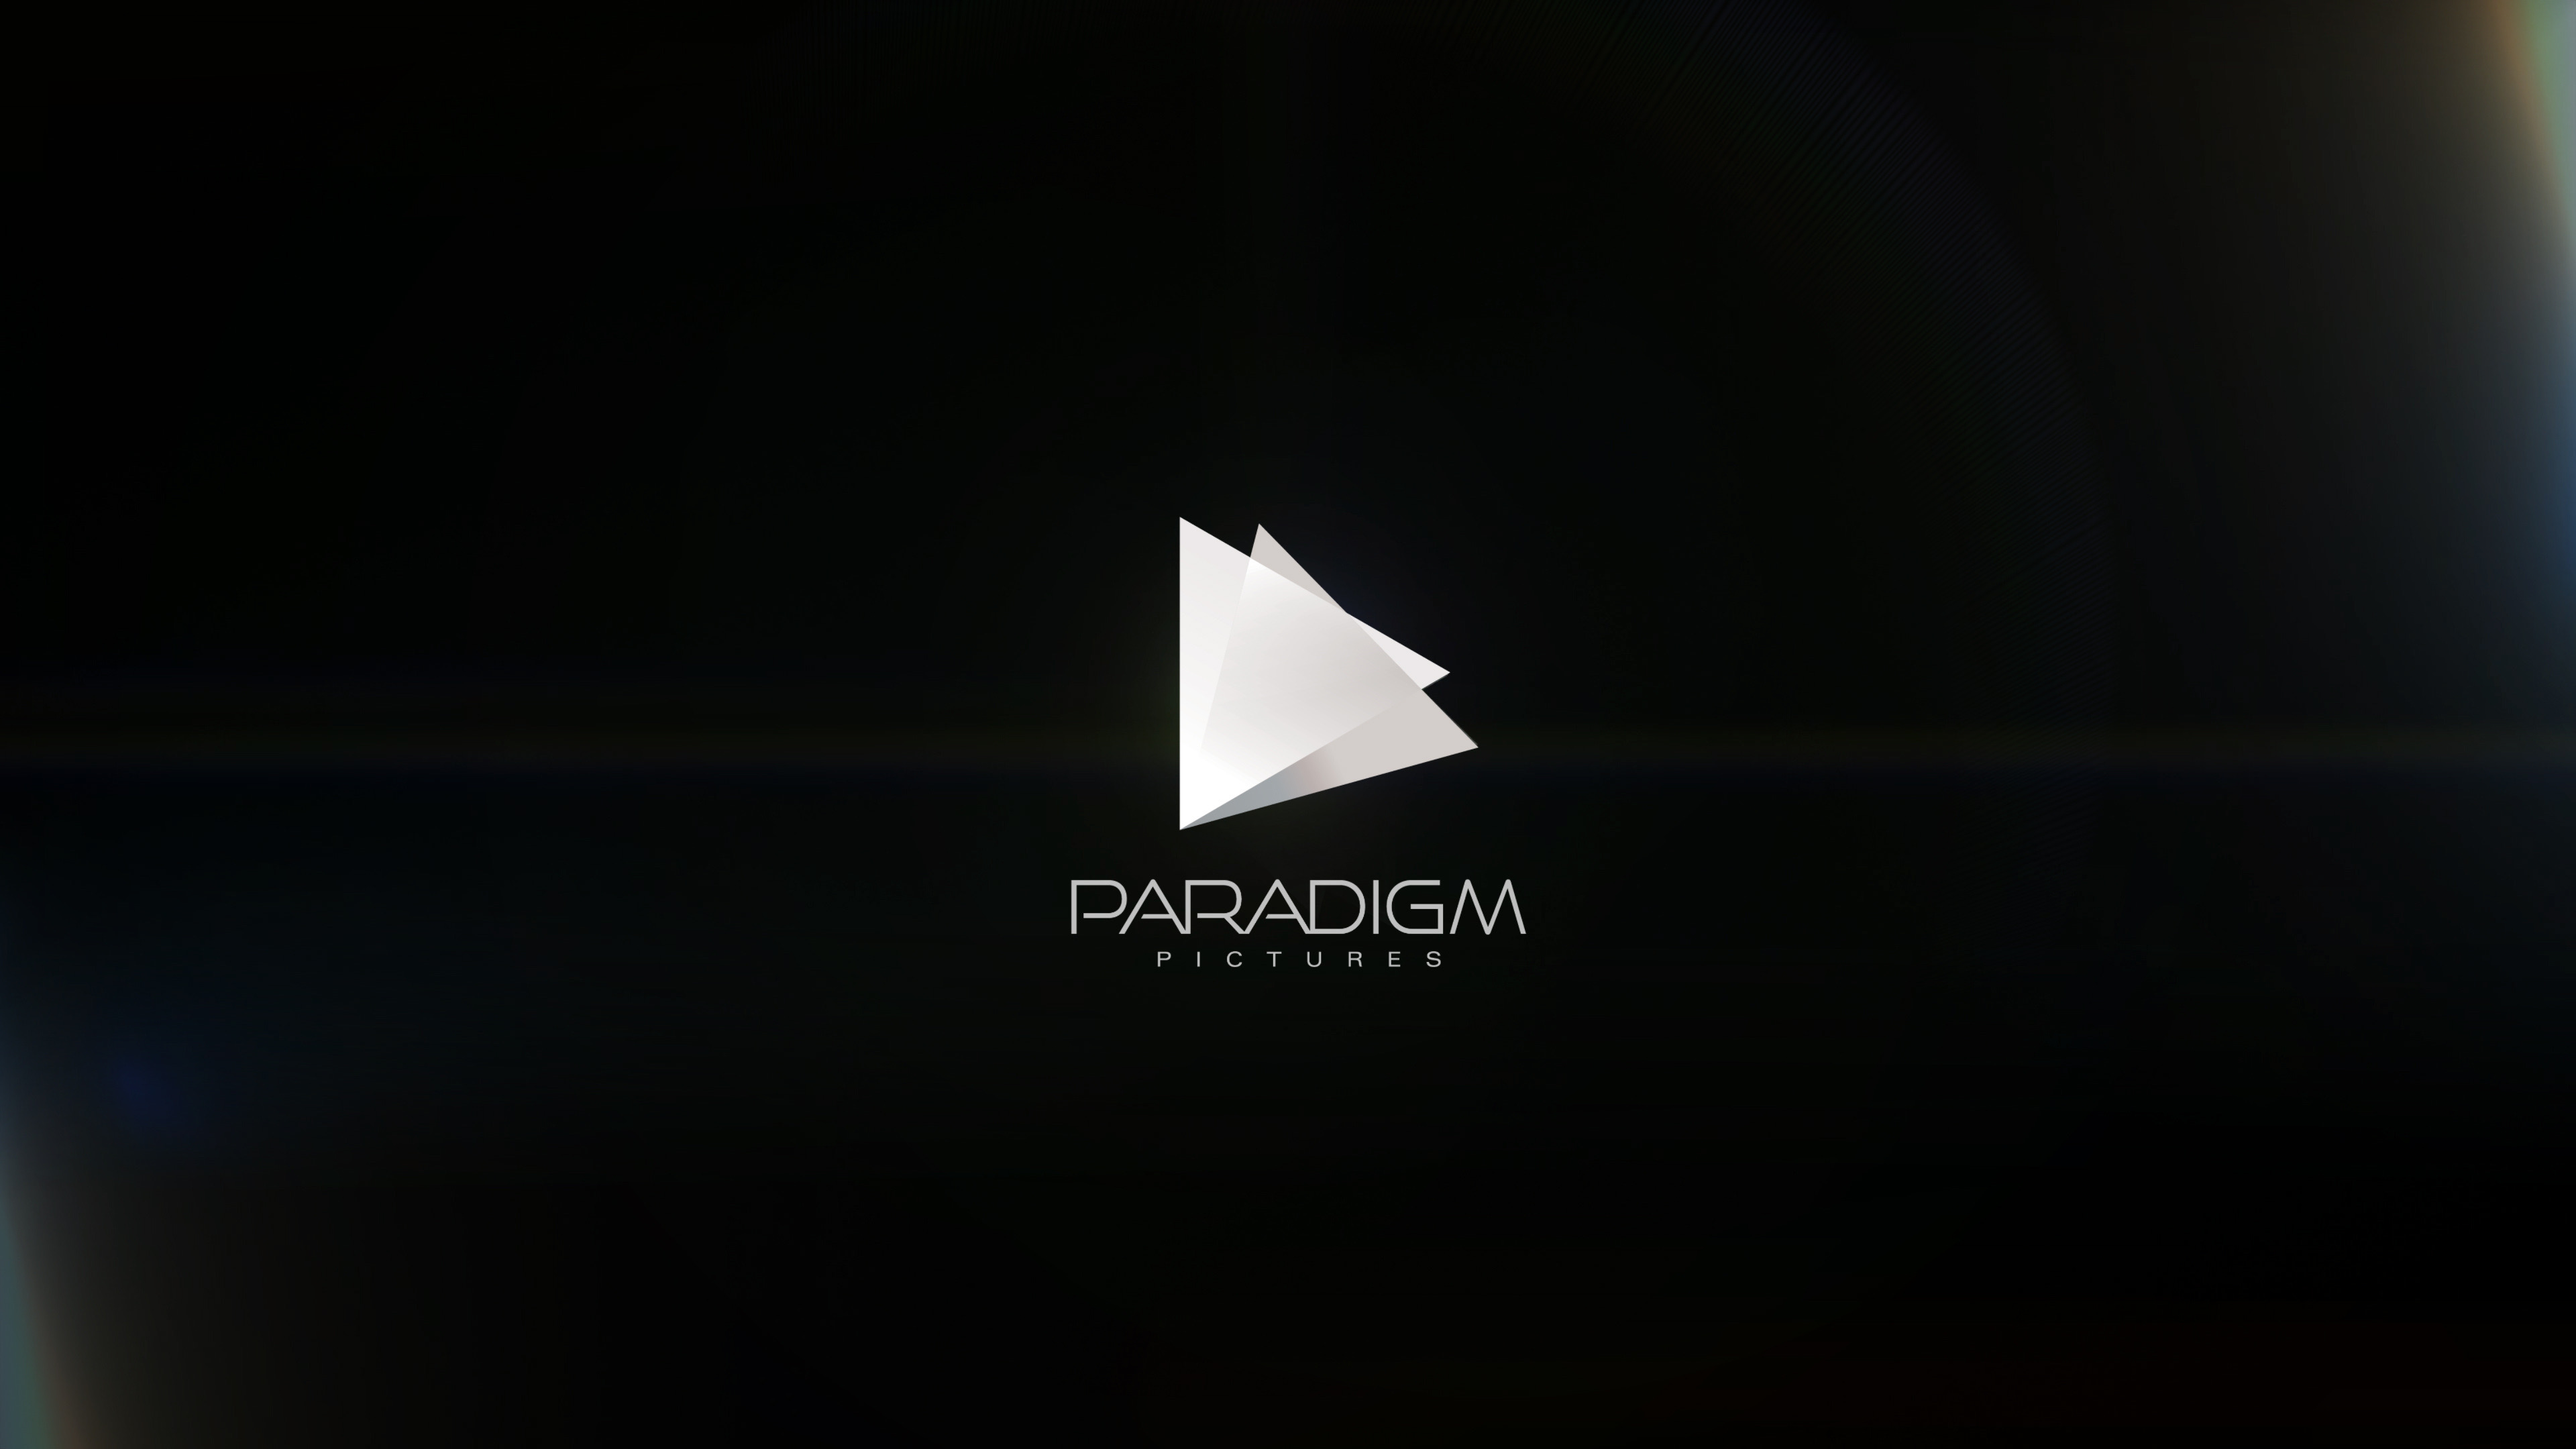 Paradigm Pictures